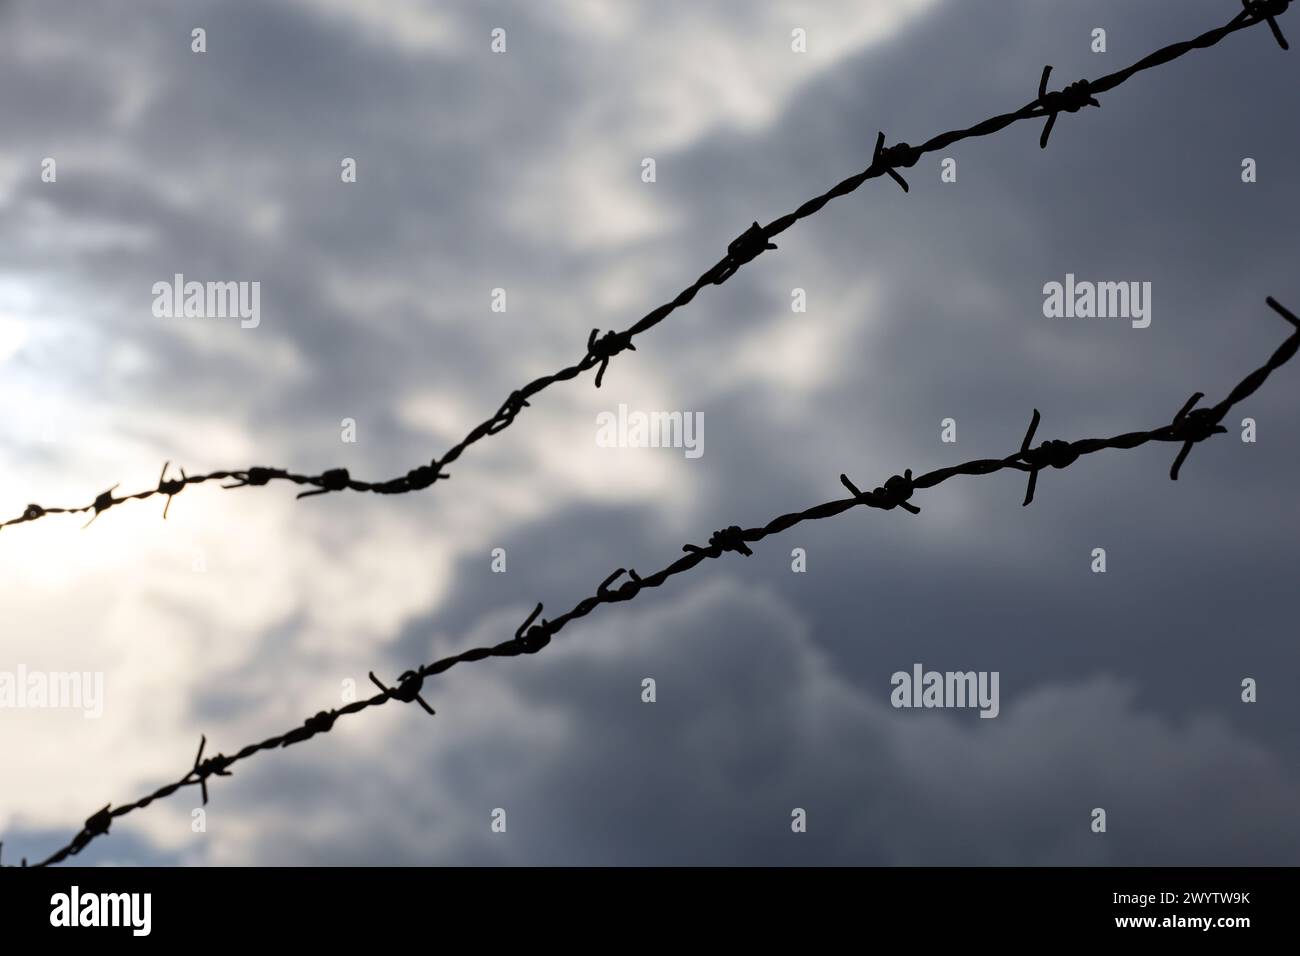 Silhouette di filo spinato arrugginito contro il cielo spettacolare con nuvole scure. Contesto per la prigione, la guerra o l'immigrazione Foto Stock